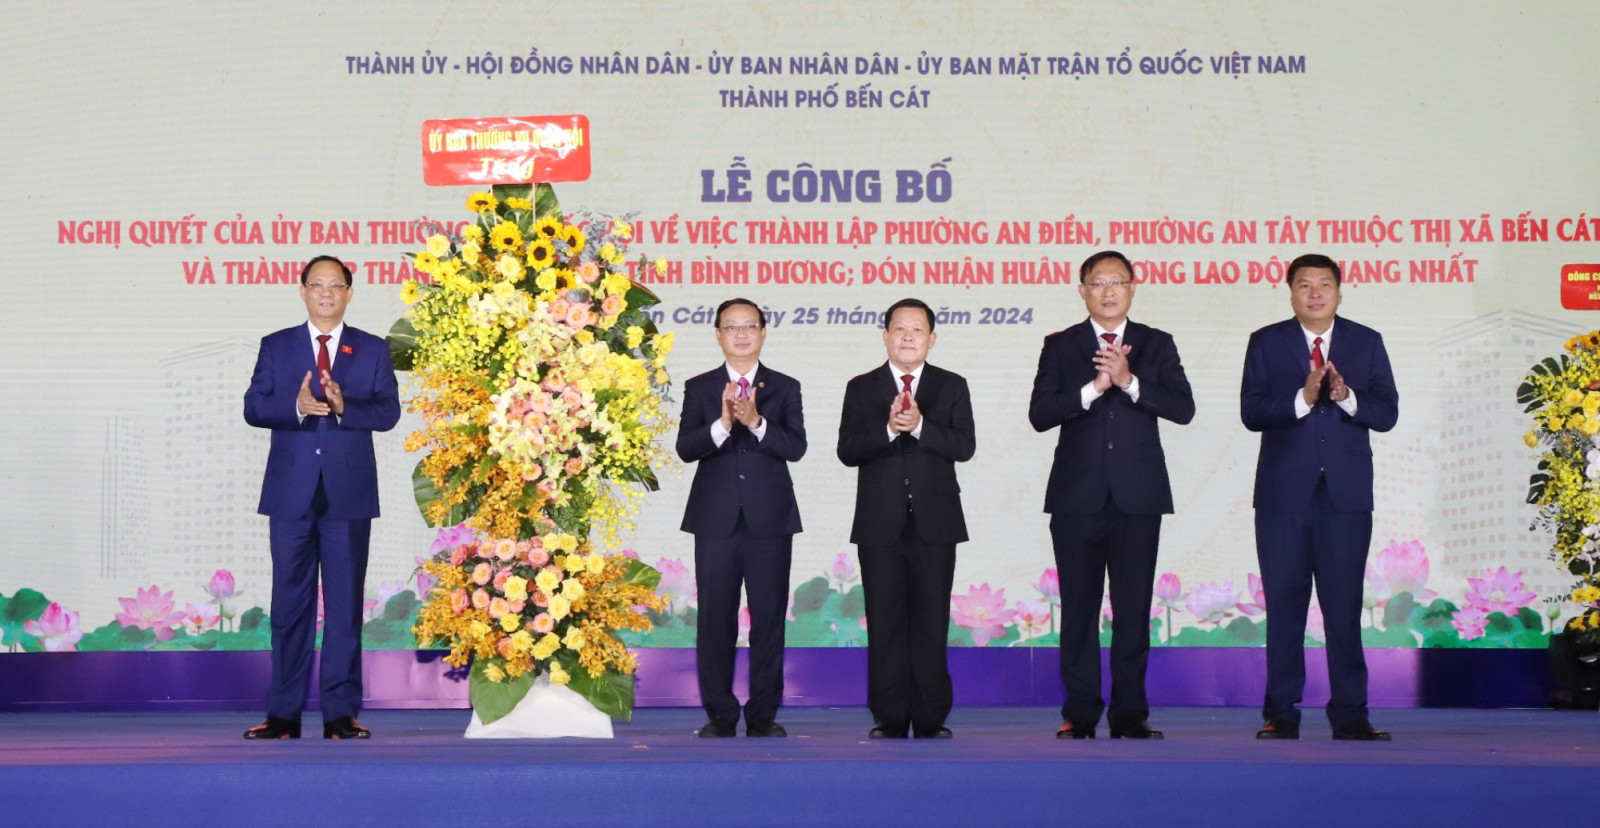 Đồng chí Trần Quang Phương tặng lẵng hoa chúc mừng Thành phố Bến Cát.